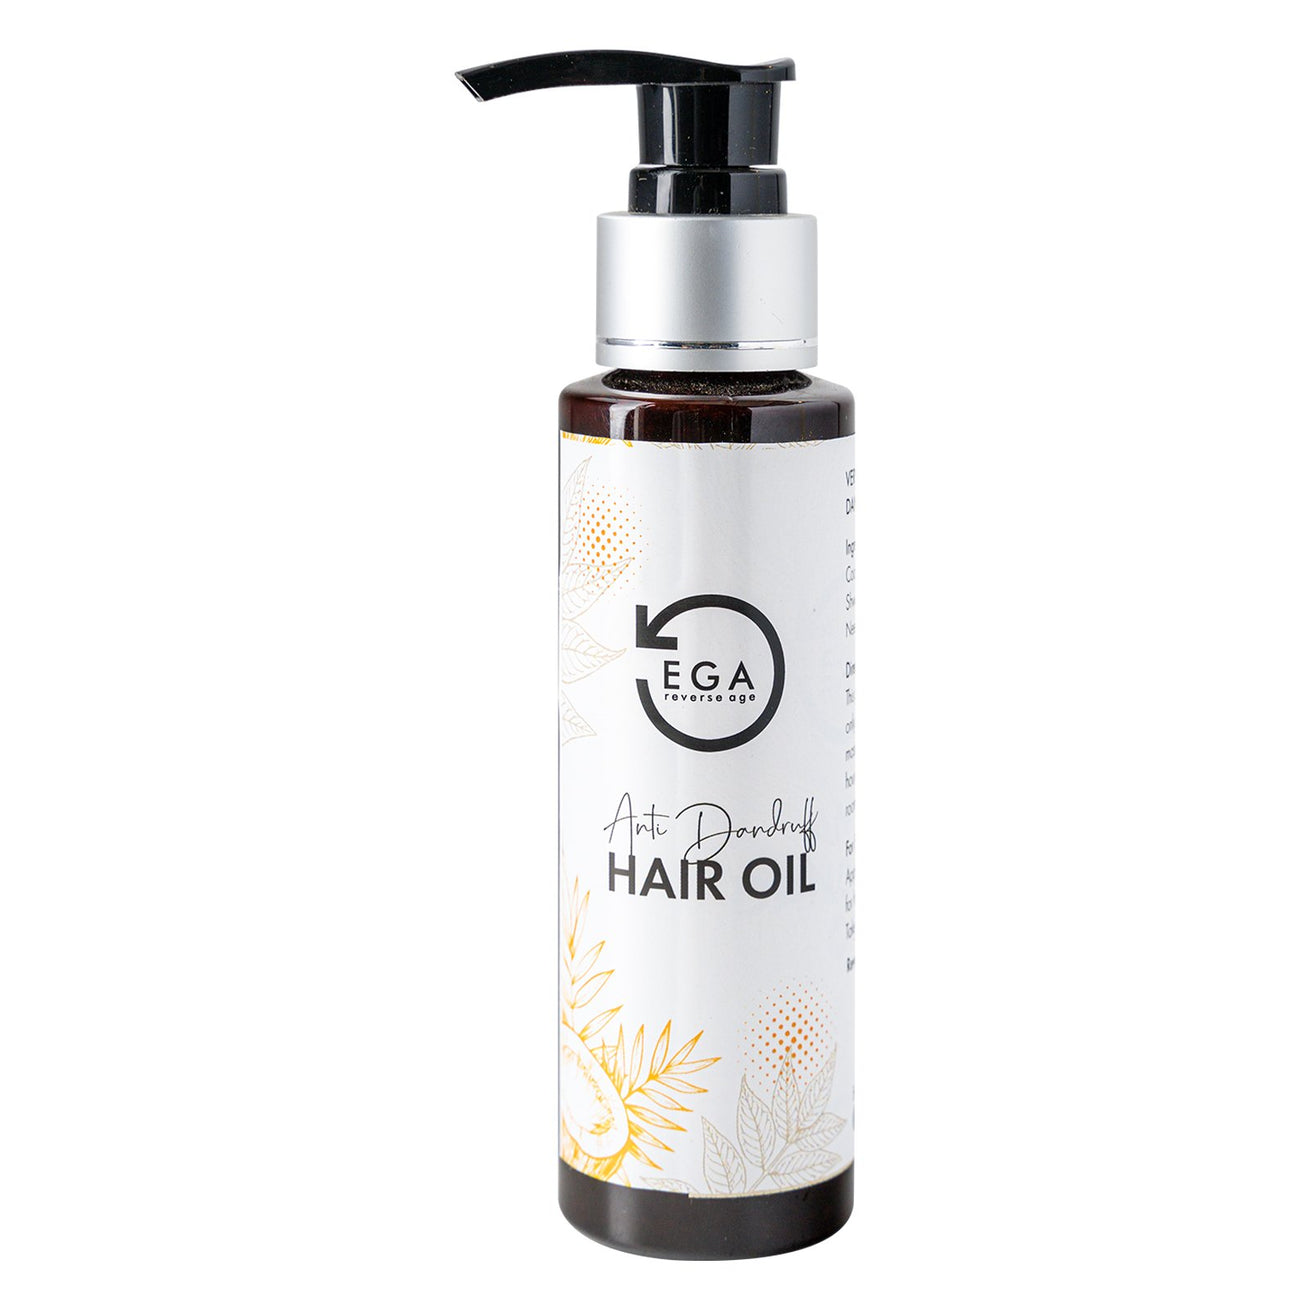 anti-dandruff hair oil bottle